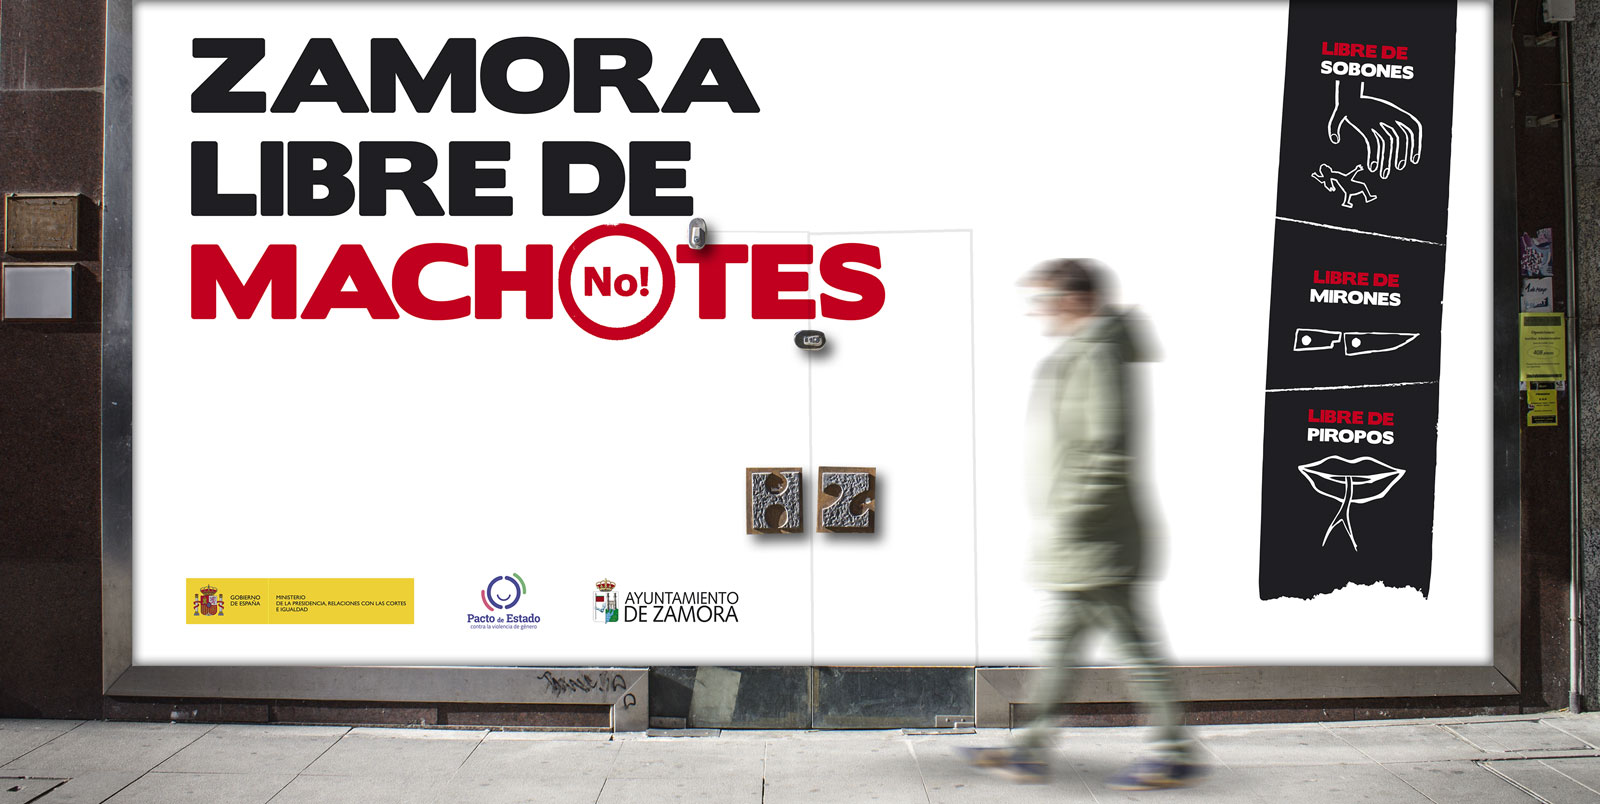 Agencia Touché - Zamora Libre de Machotes